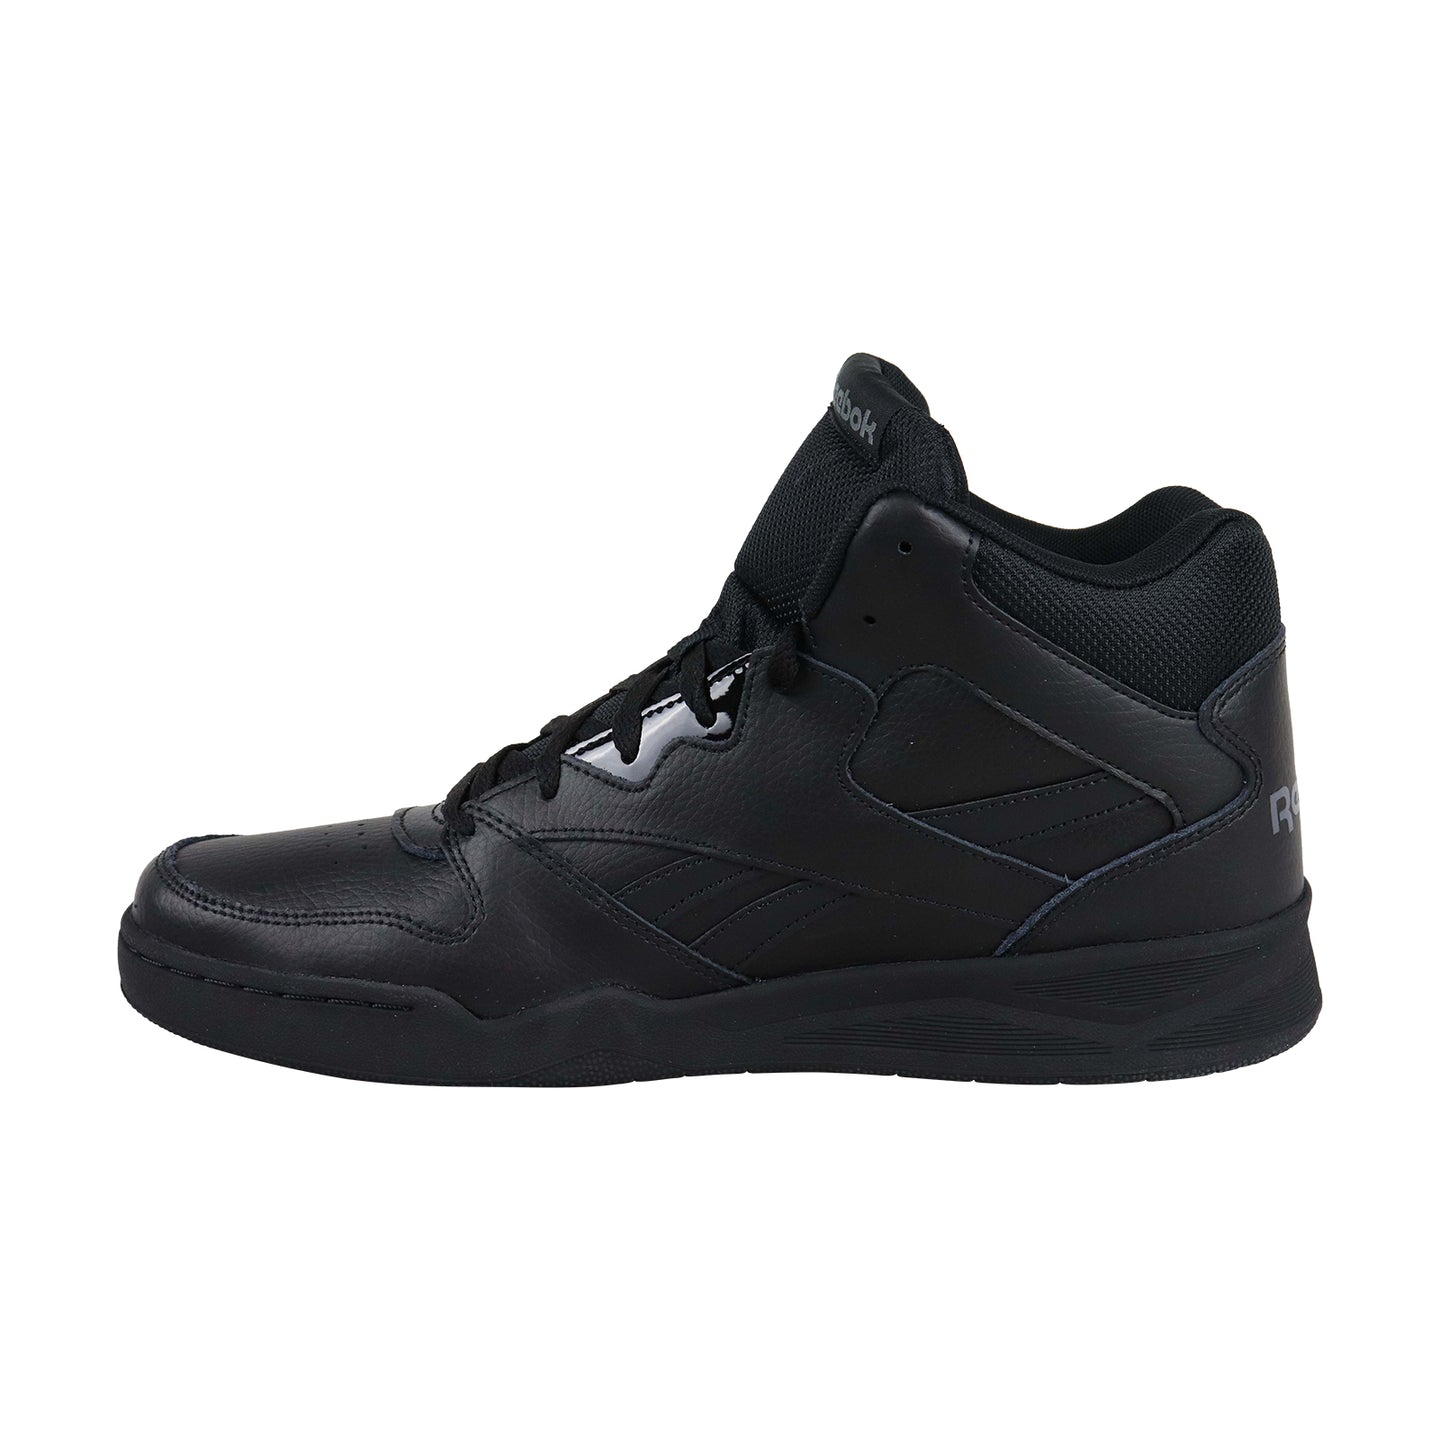 Reebok Royal BB 4500 HI 2 CN4108 Mens Black Casual Basketball Sneakers ...